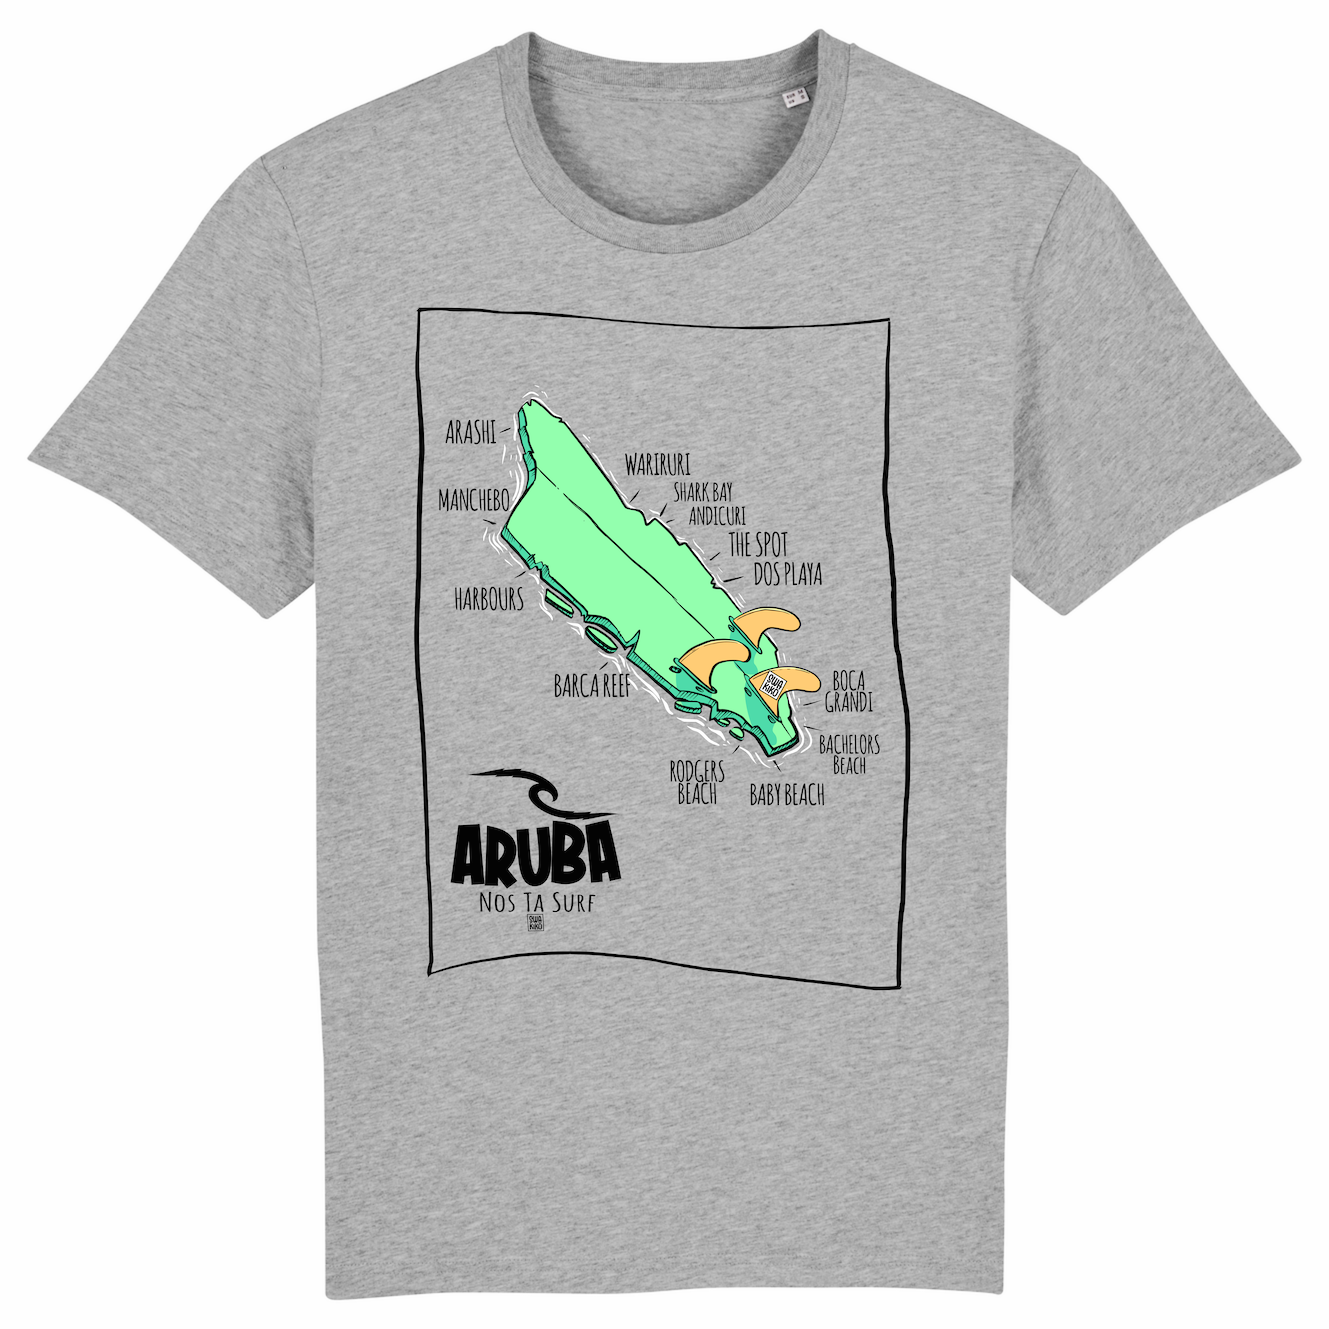 Grijs T-shirt met een design van Aruba als beschadigd surfboard en de namen van stranden en surf spots. 